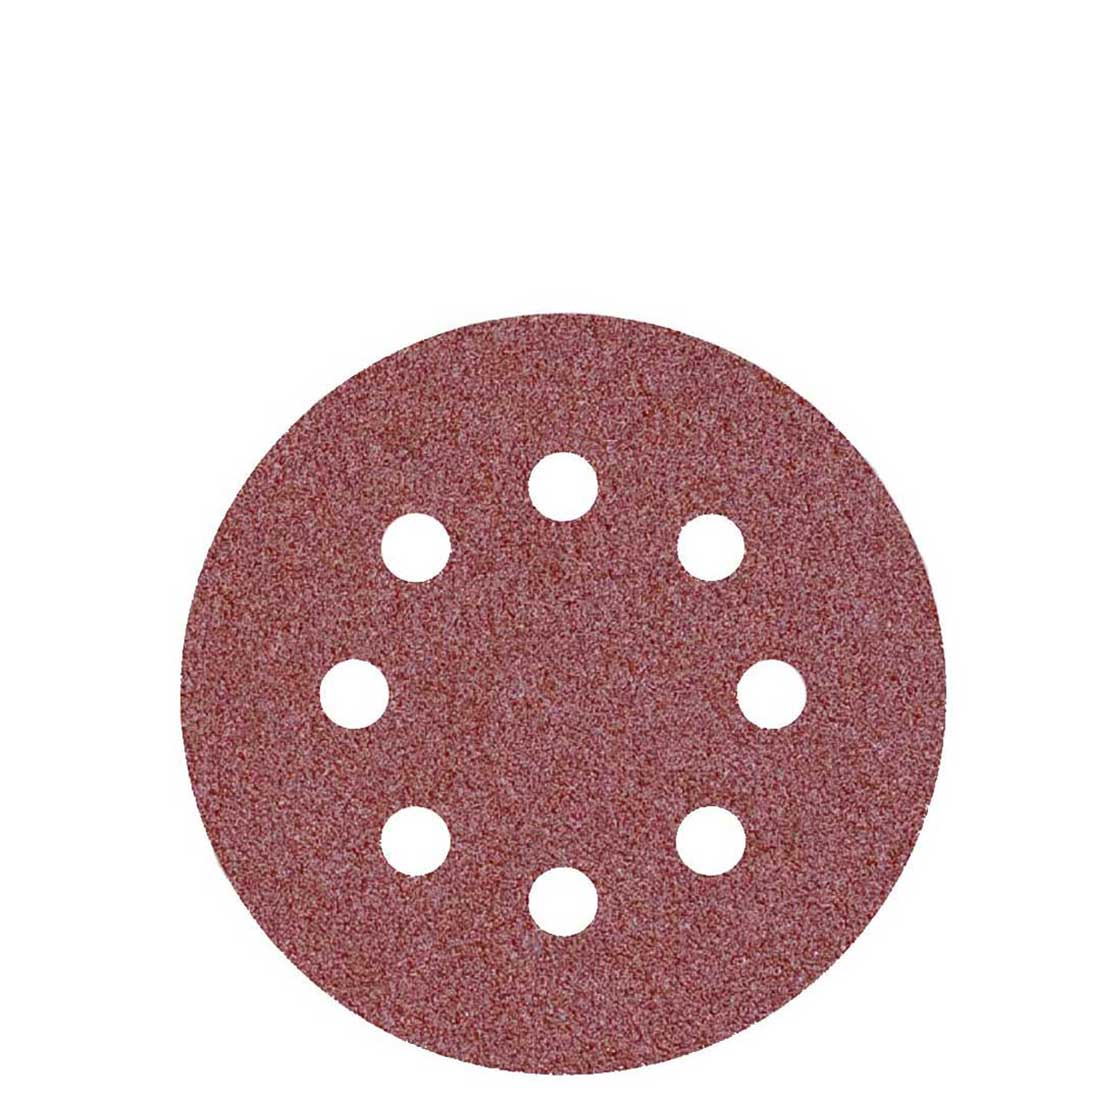 MioTools Klett-Schleifscheiben für Exzenterschleifer, K24–240, Ø 115 mm / 8-Loch / Normalkorund